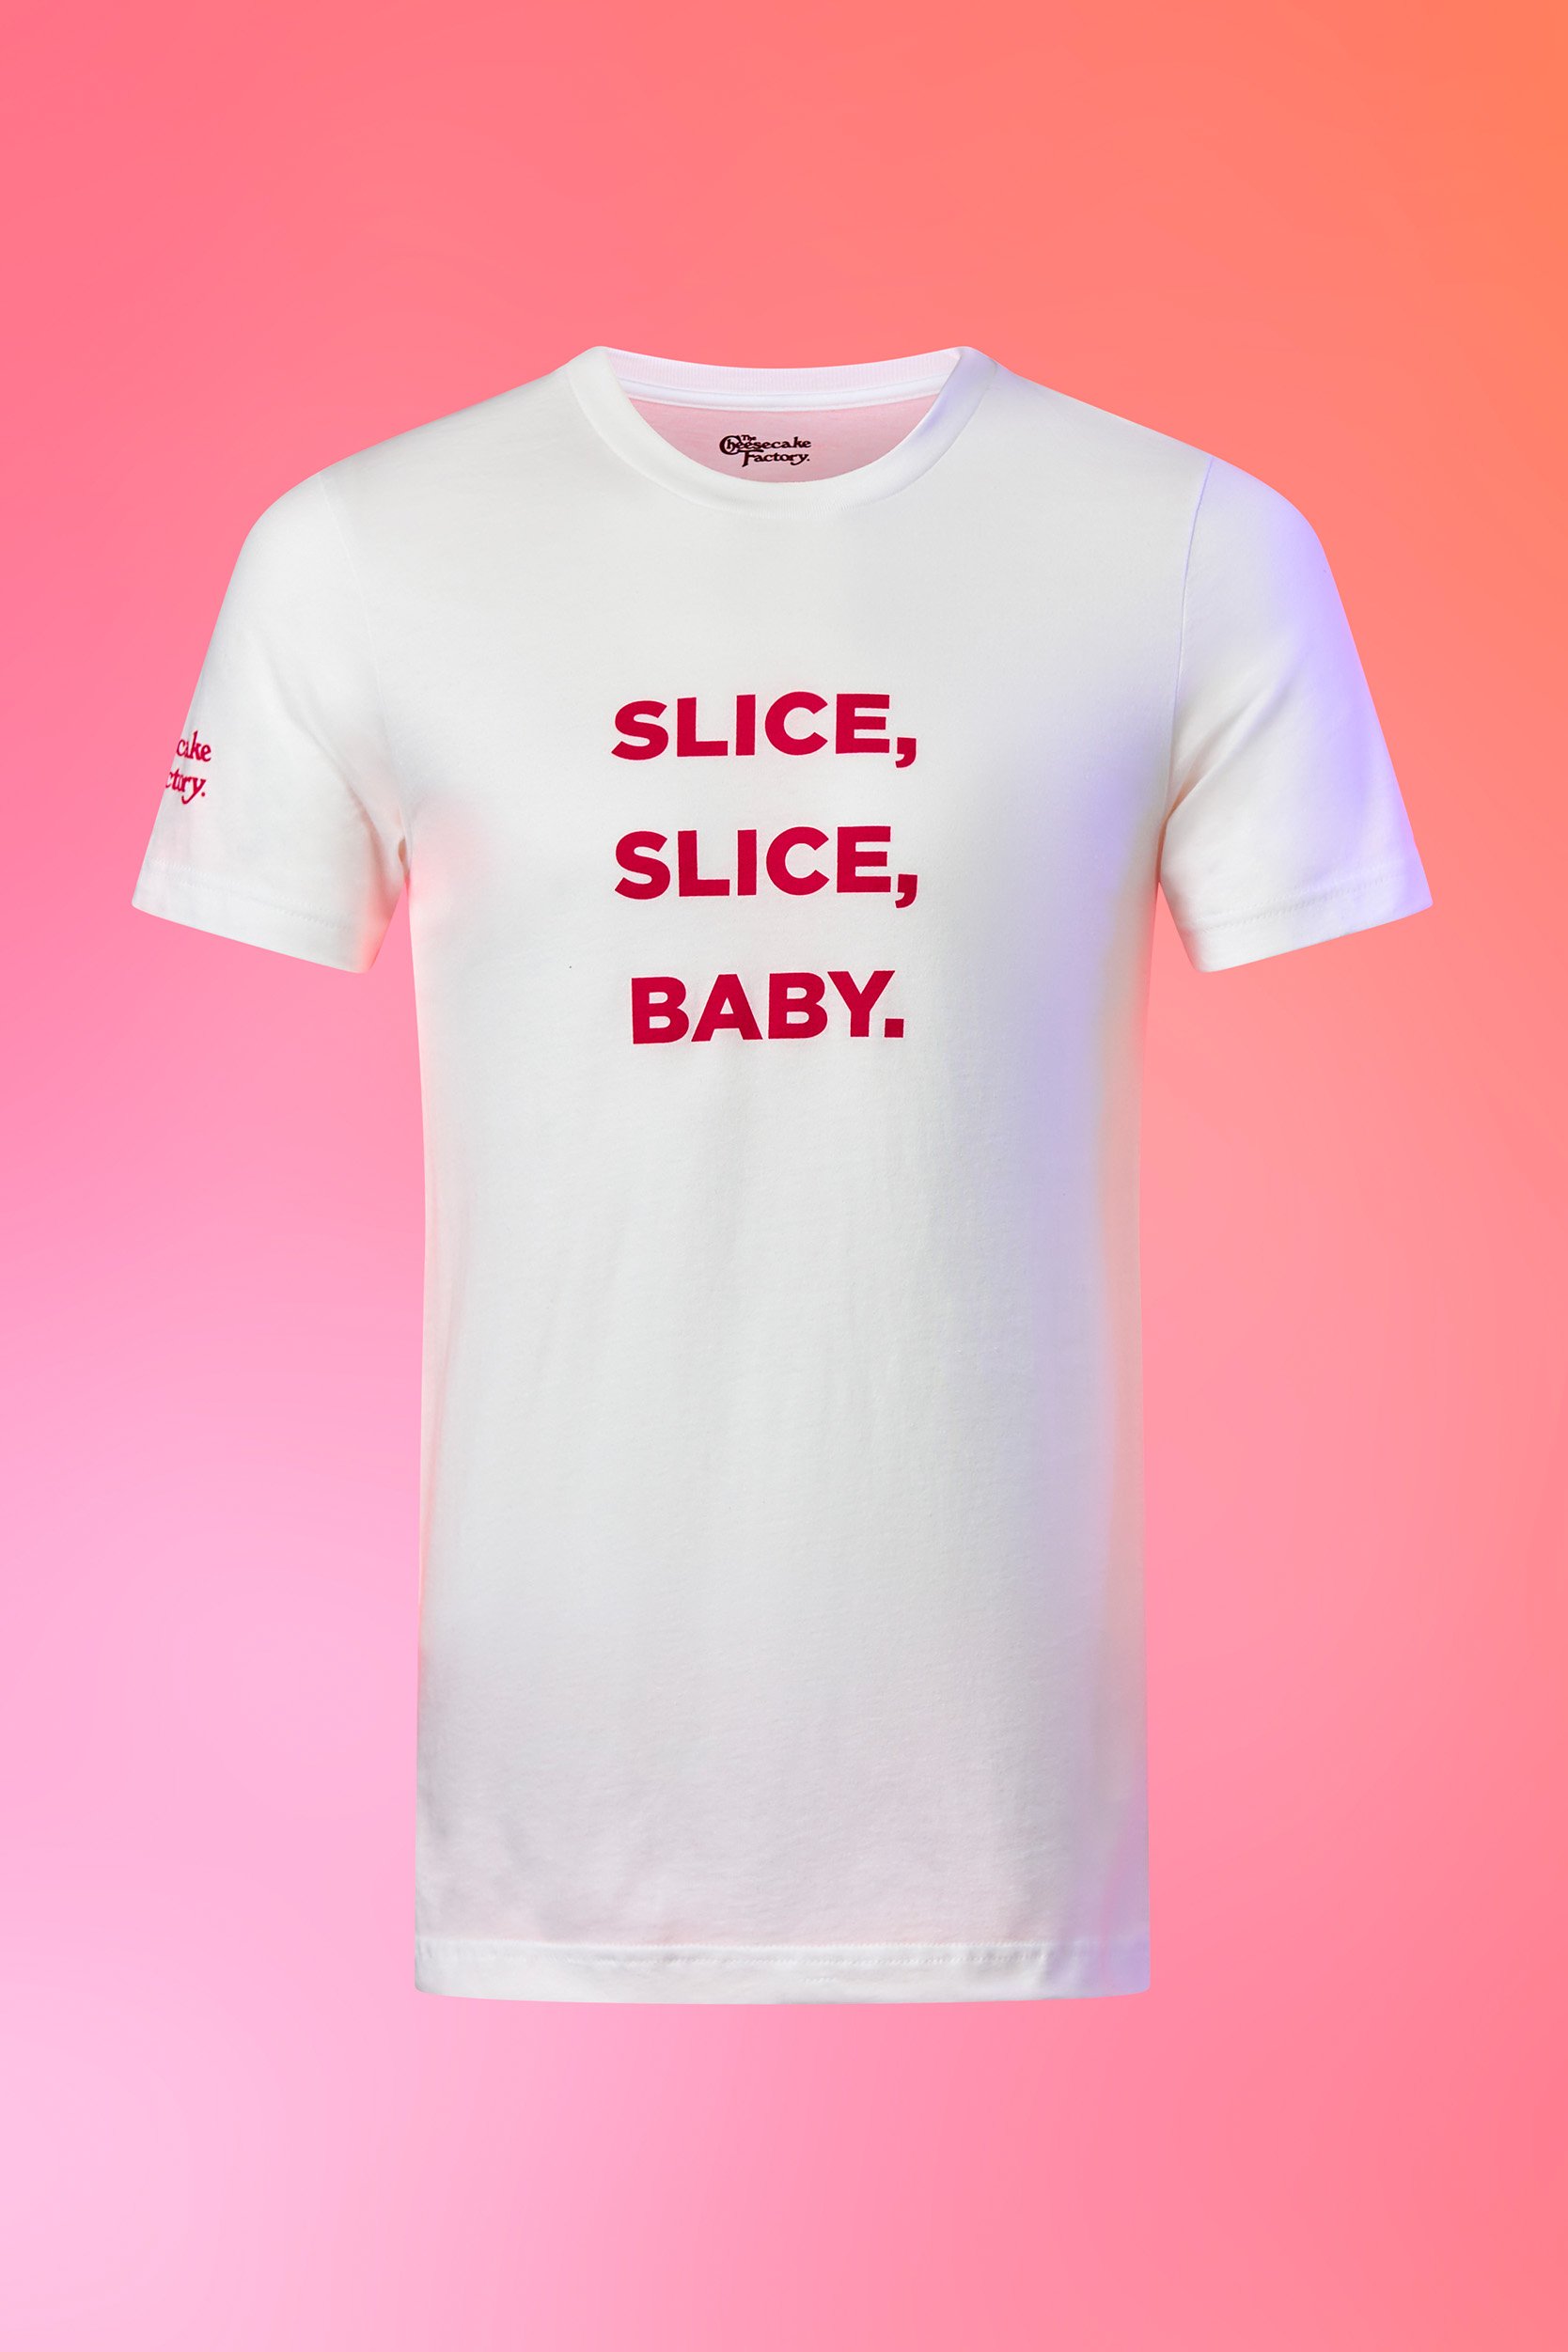 Slice Slice Baby Shirt image1_2x3_9.jpg